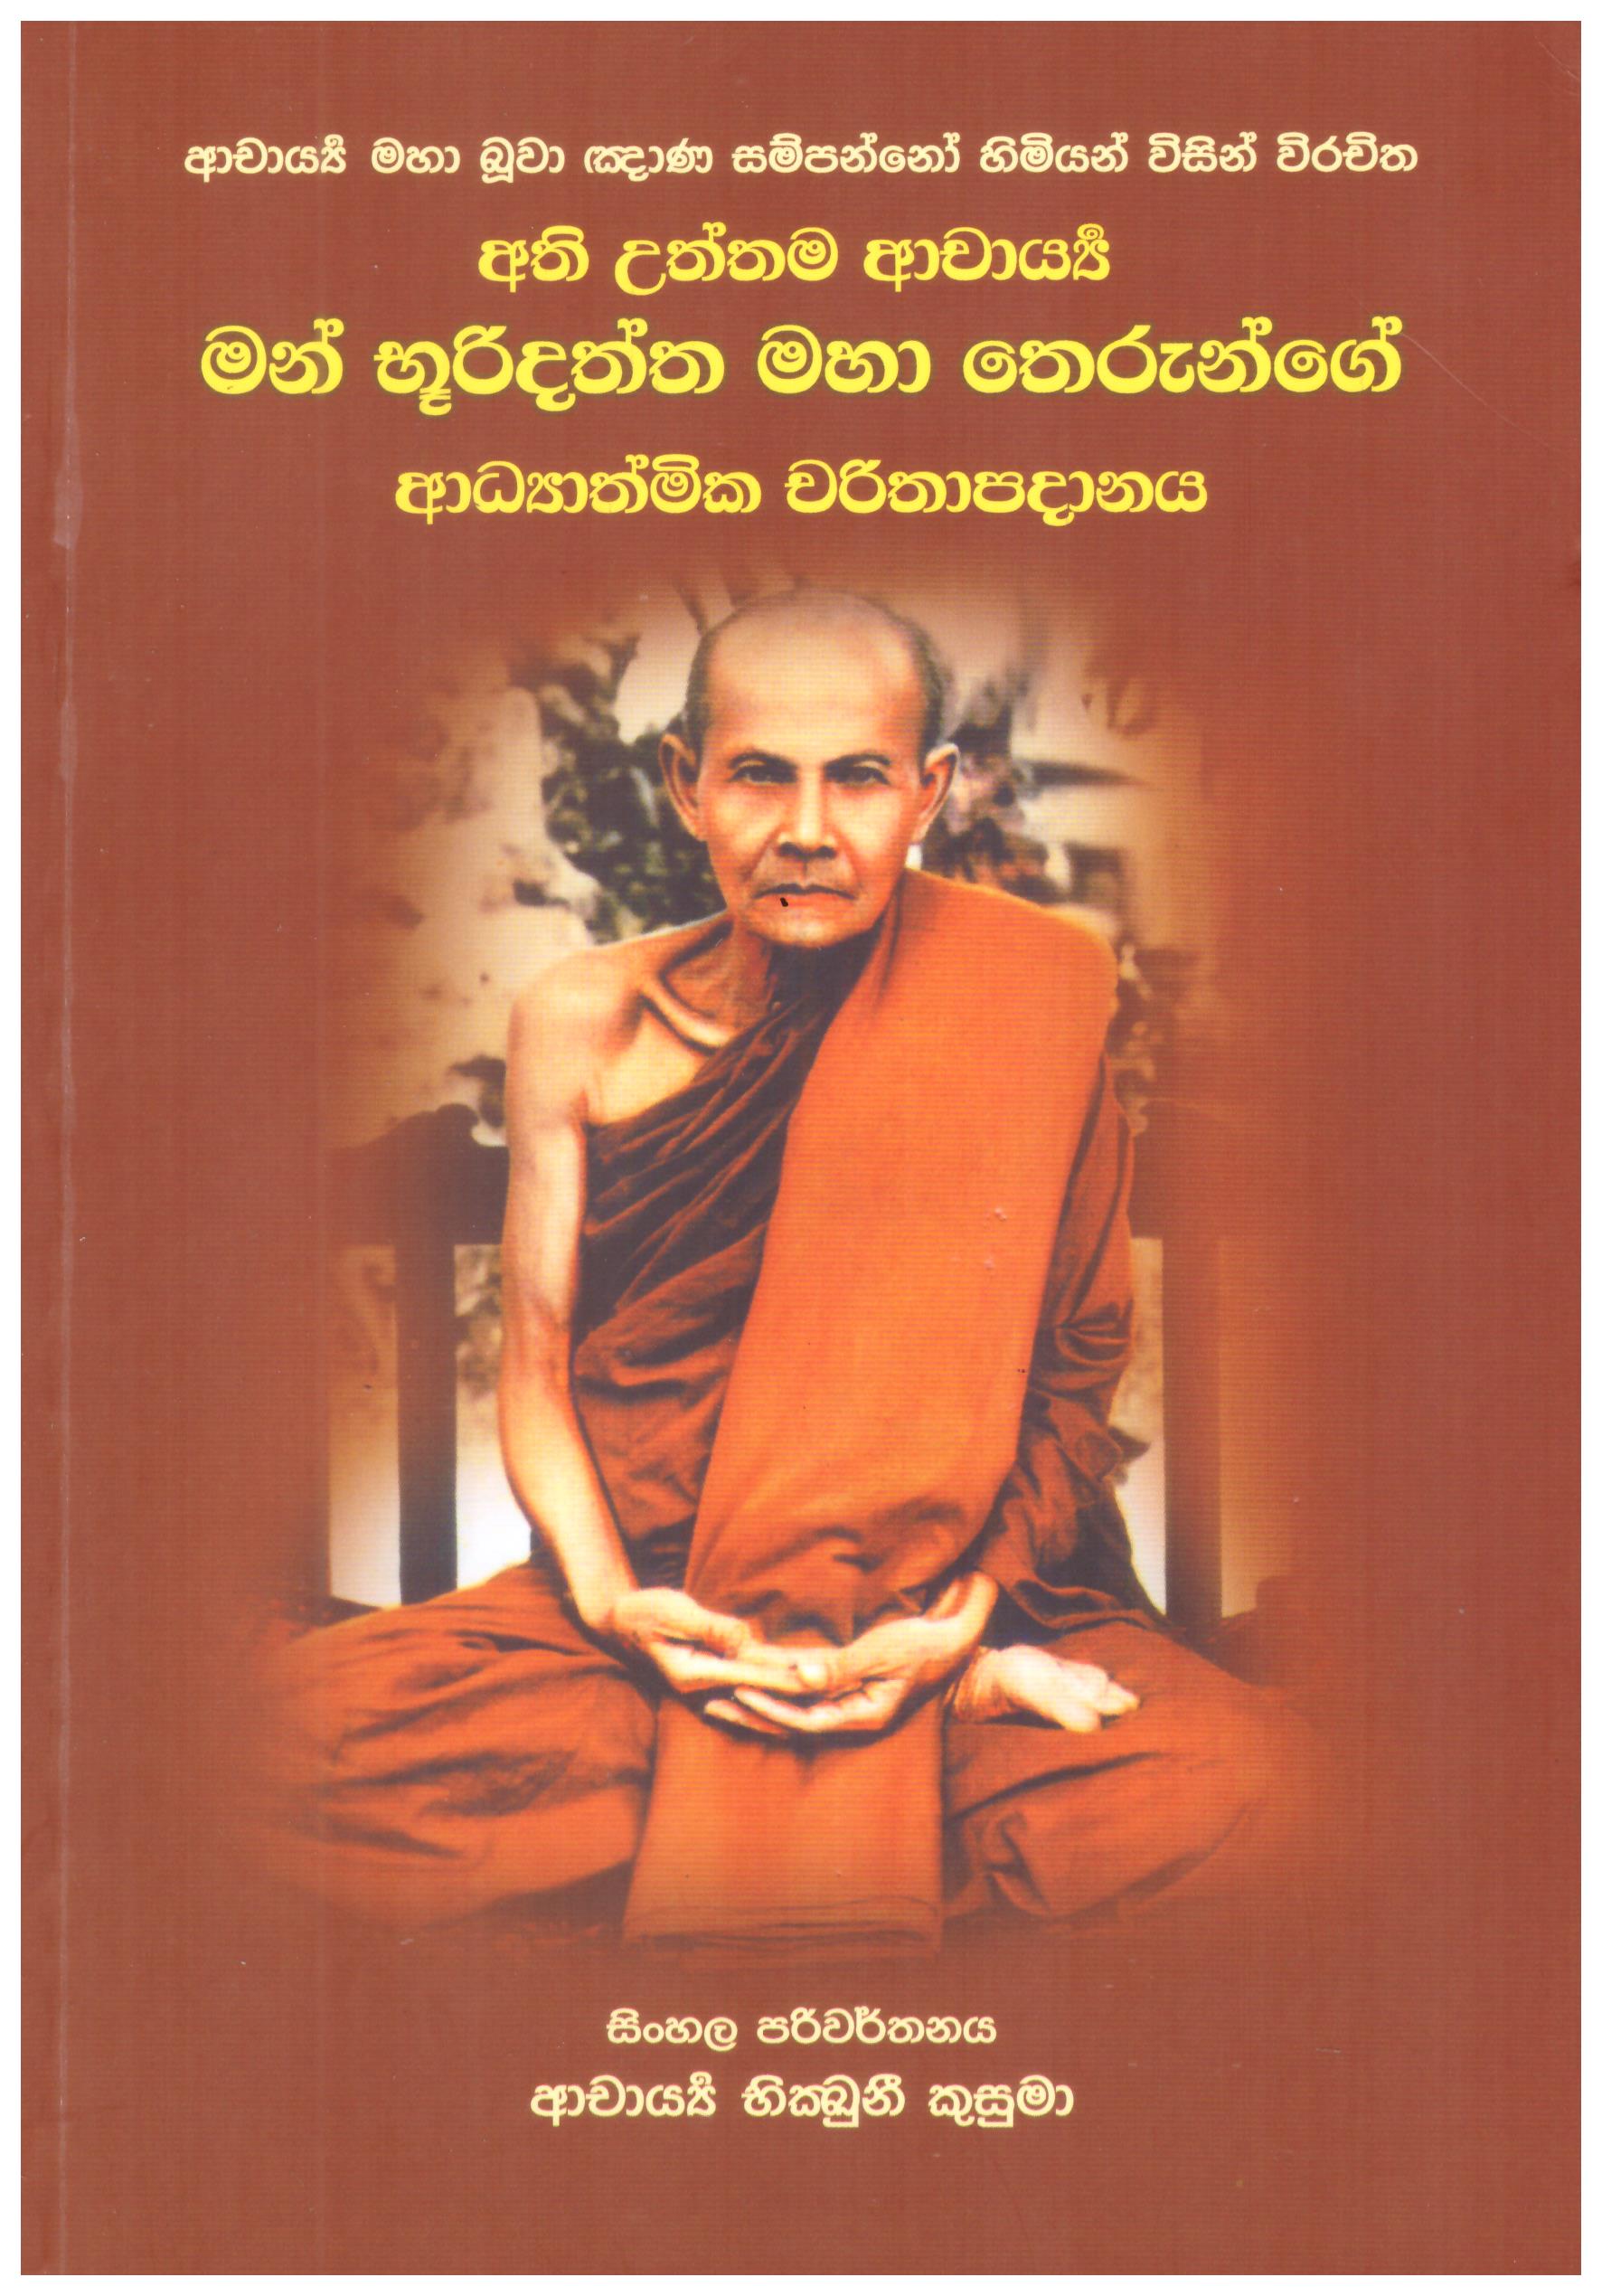 Athiuttama Acharya Man Bhooridatta Maha Therunge Adyathmika Charipadhanaya